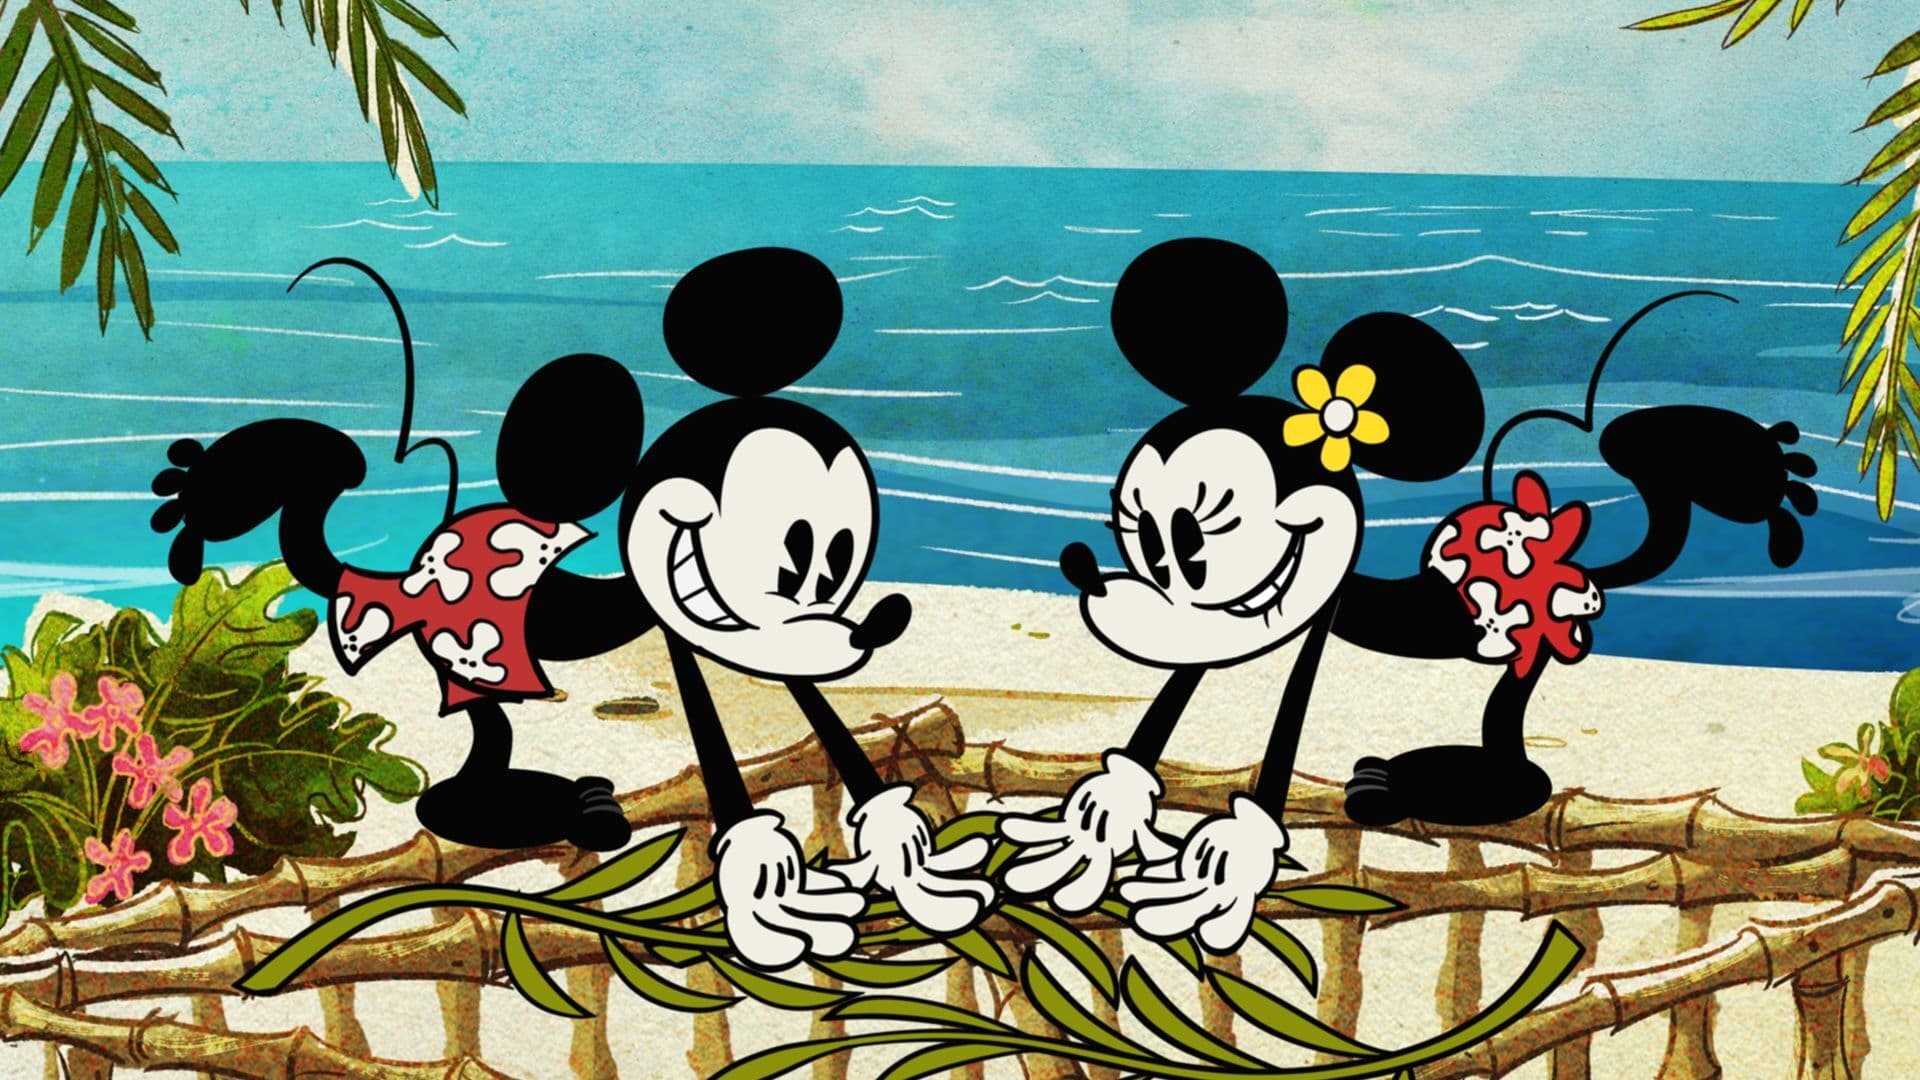 Image El maravilloso mundo de Mickey Mouse 1